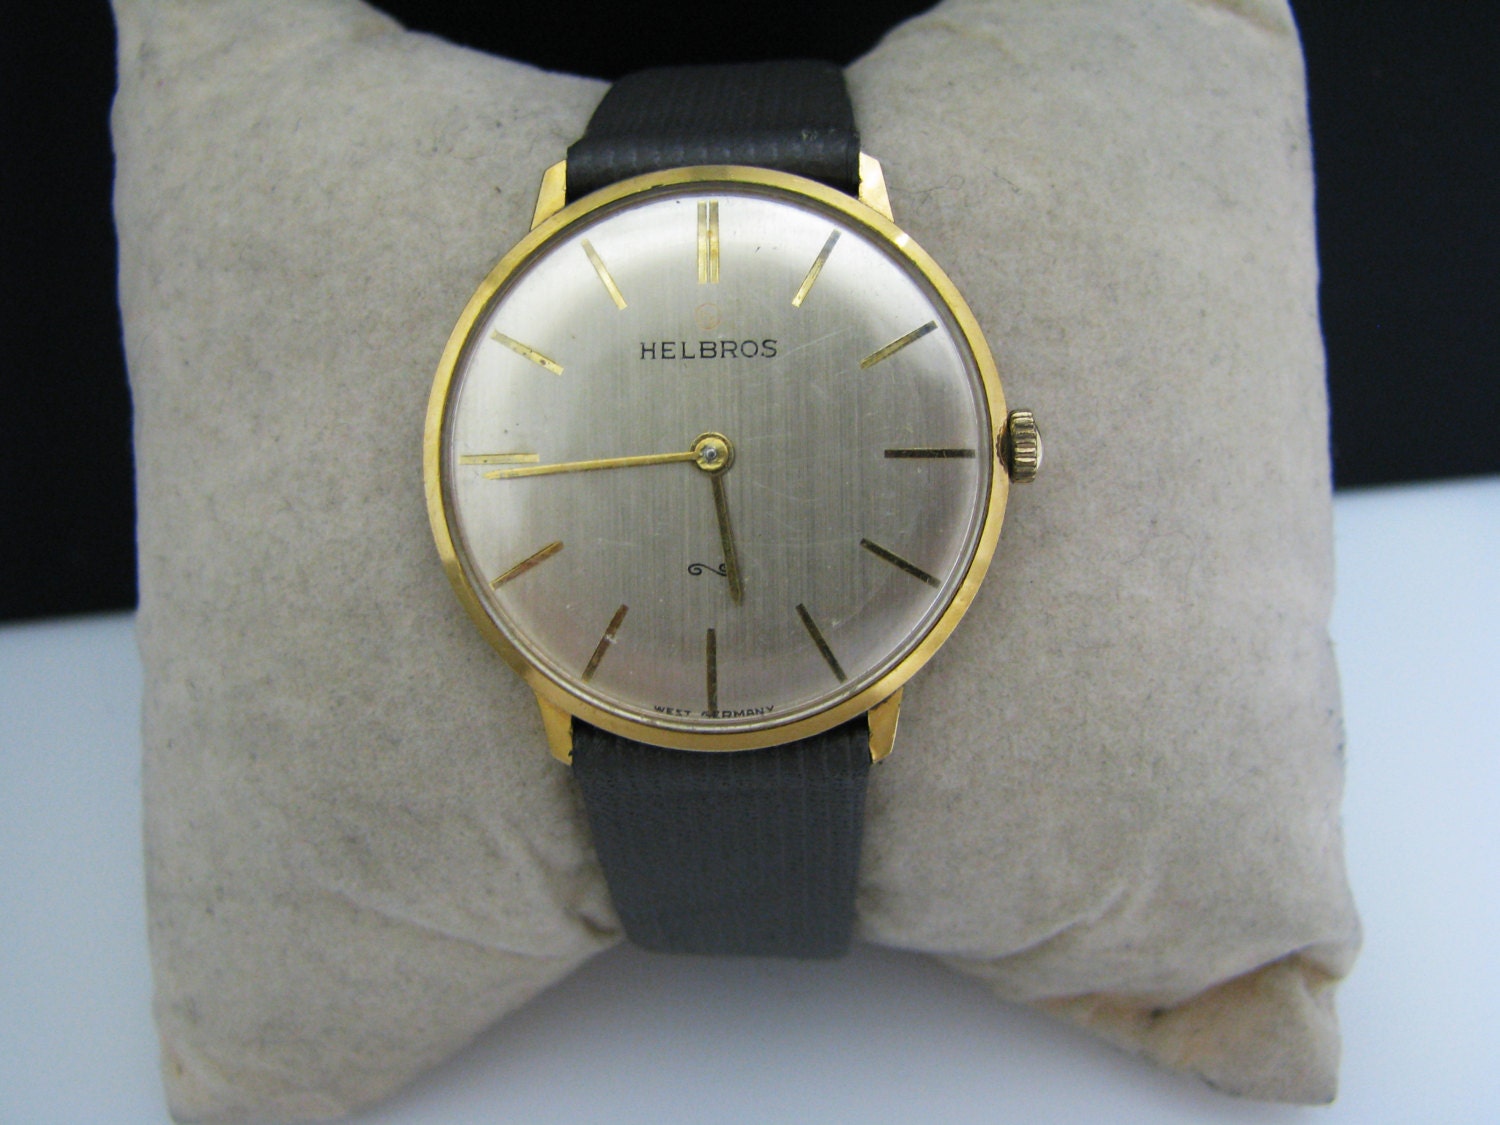 Vintage 1970's Helbros Men's Watch in Gold Tone